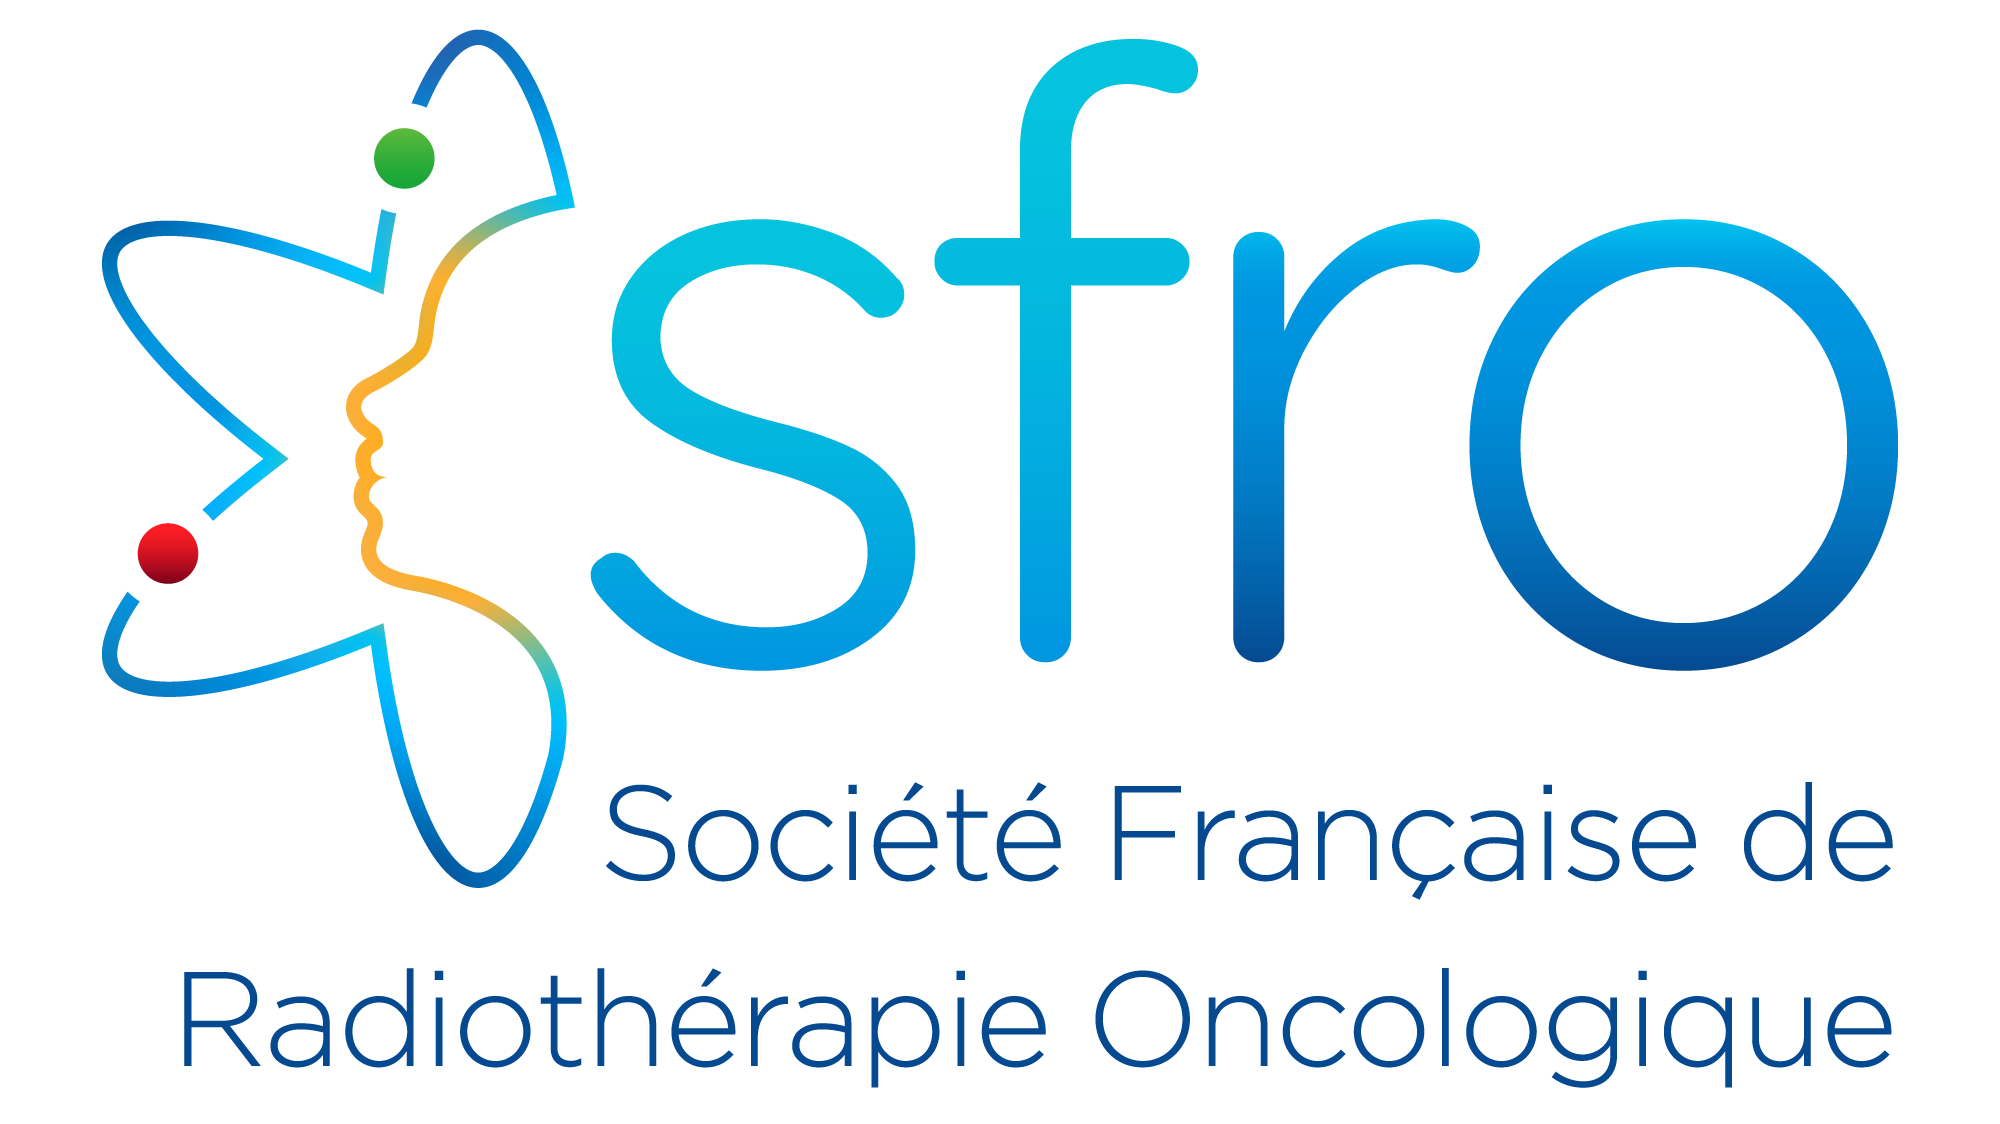 Société Française de Radiothérapie Oncologique